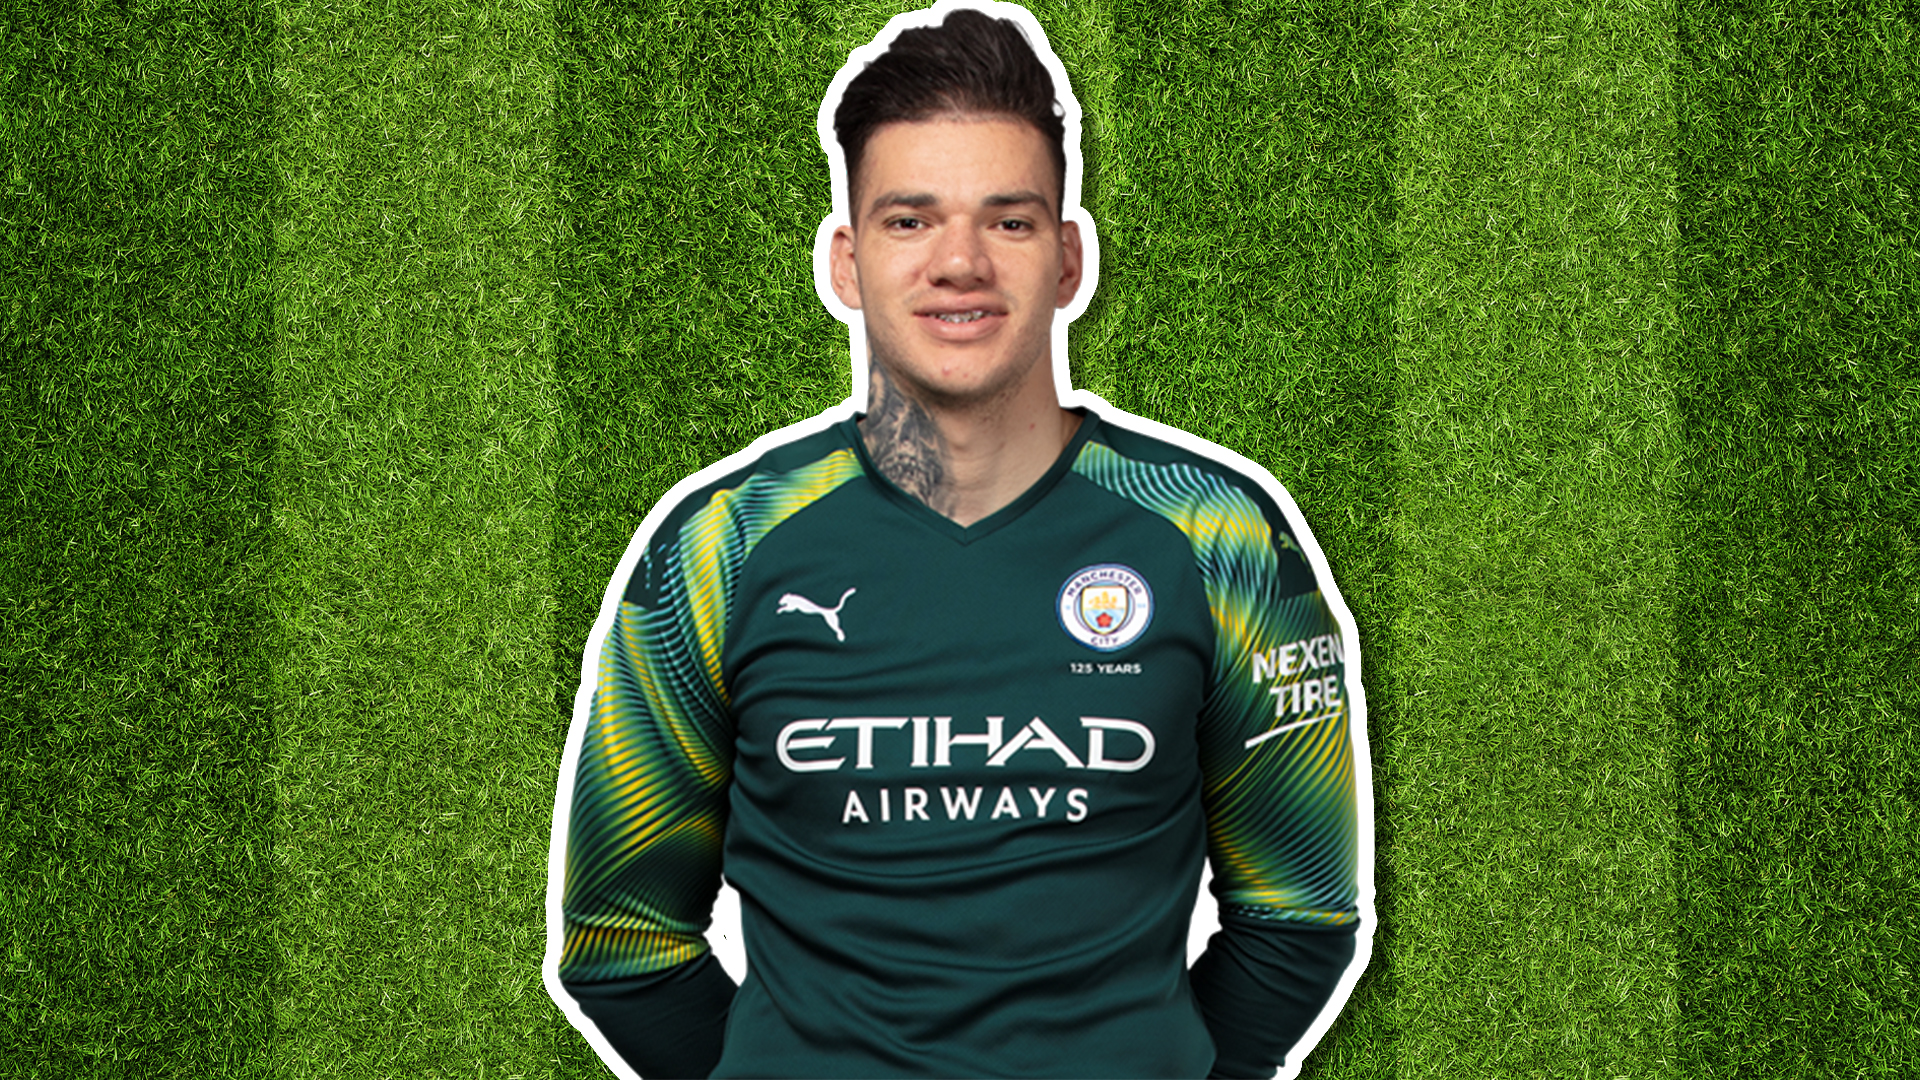 Manchester City player Ederson Santana de Moraes